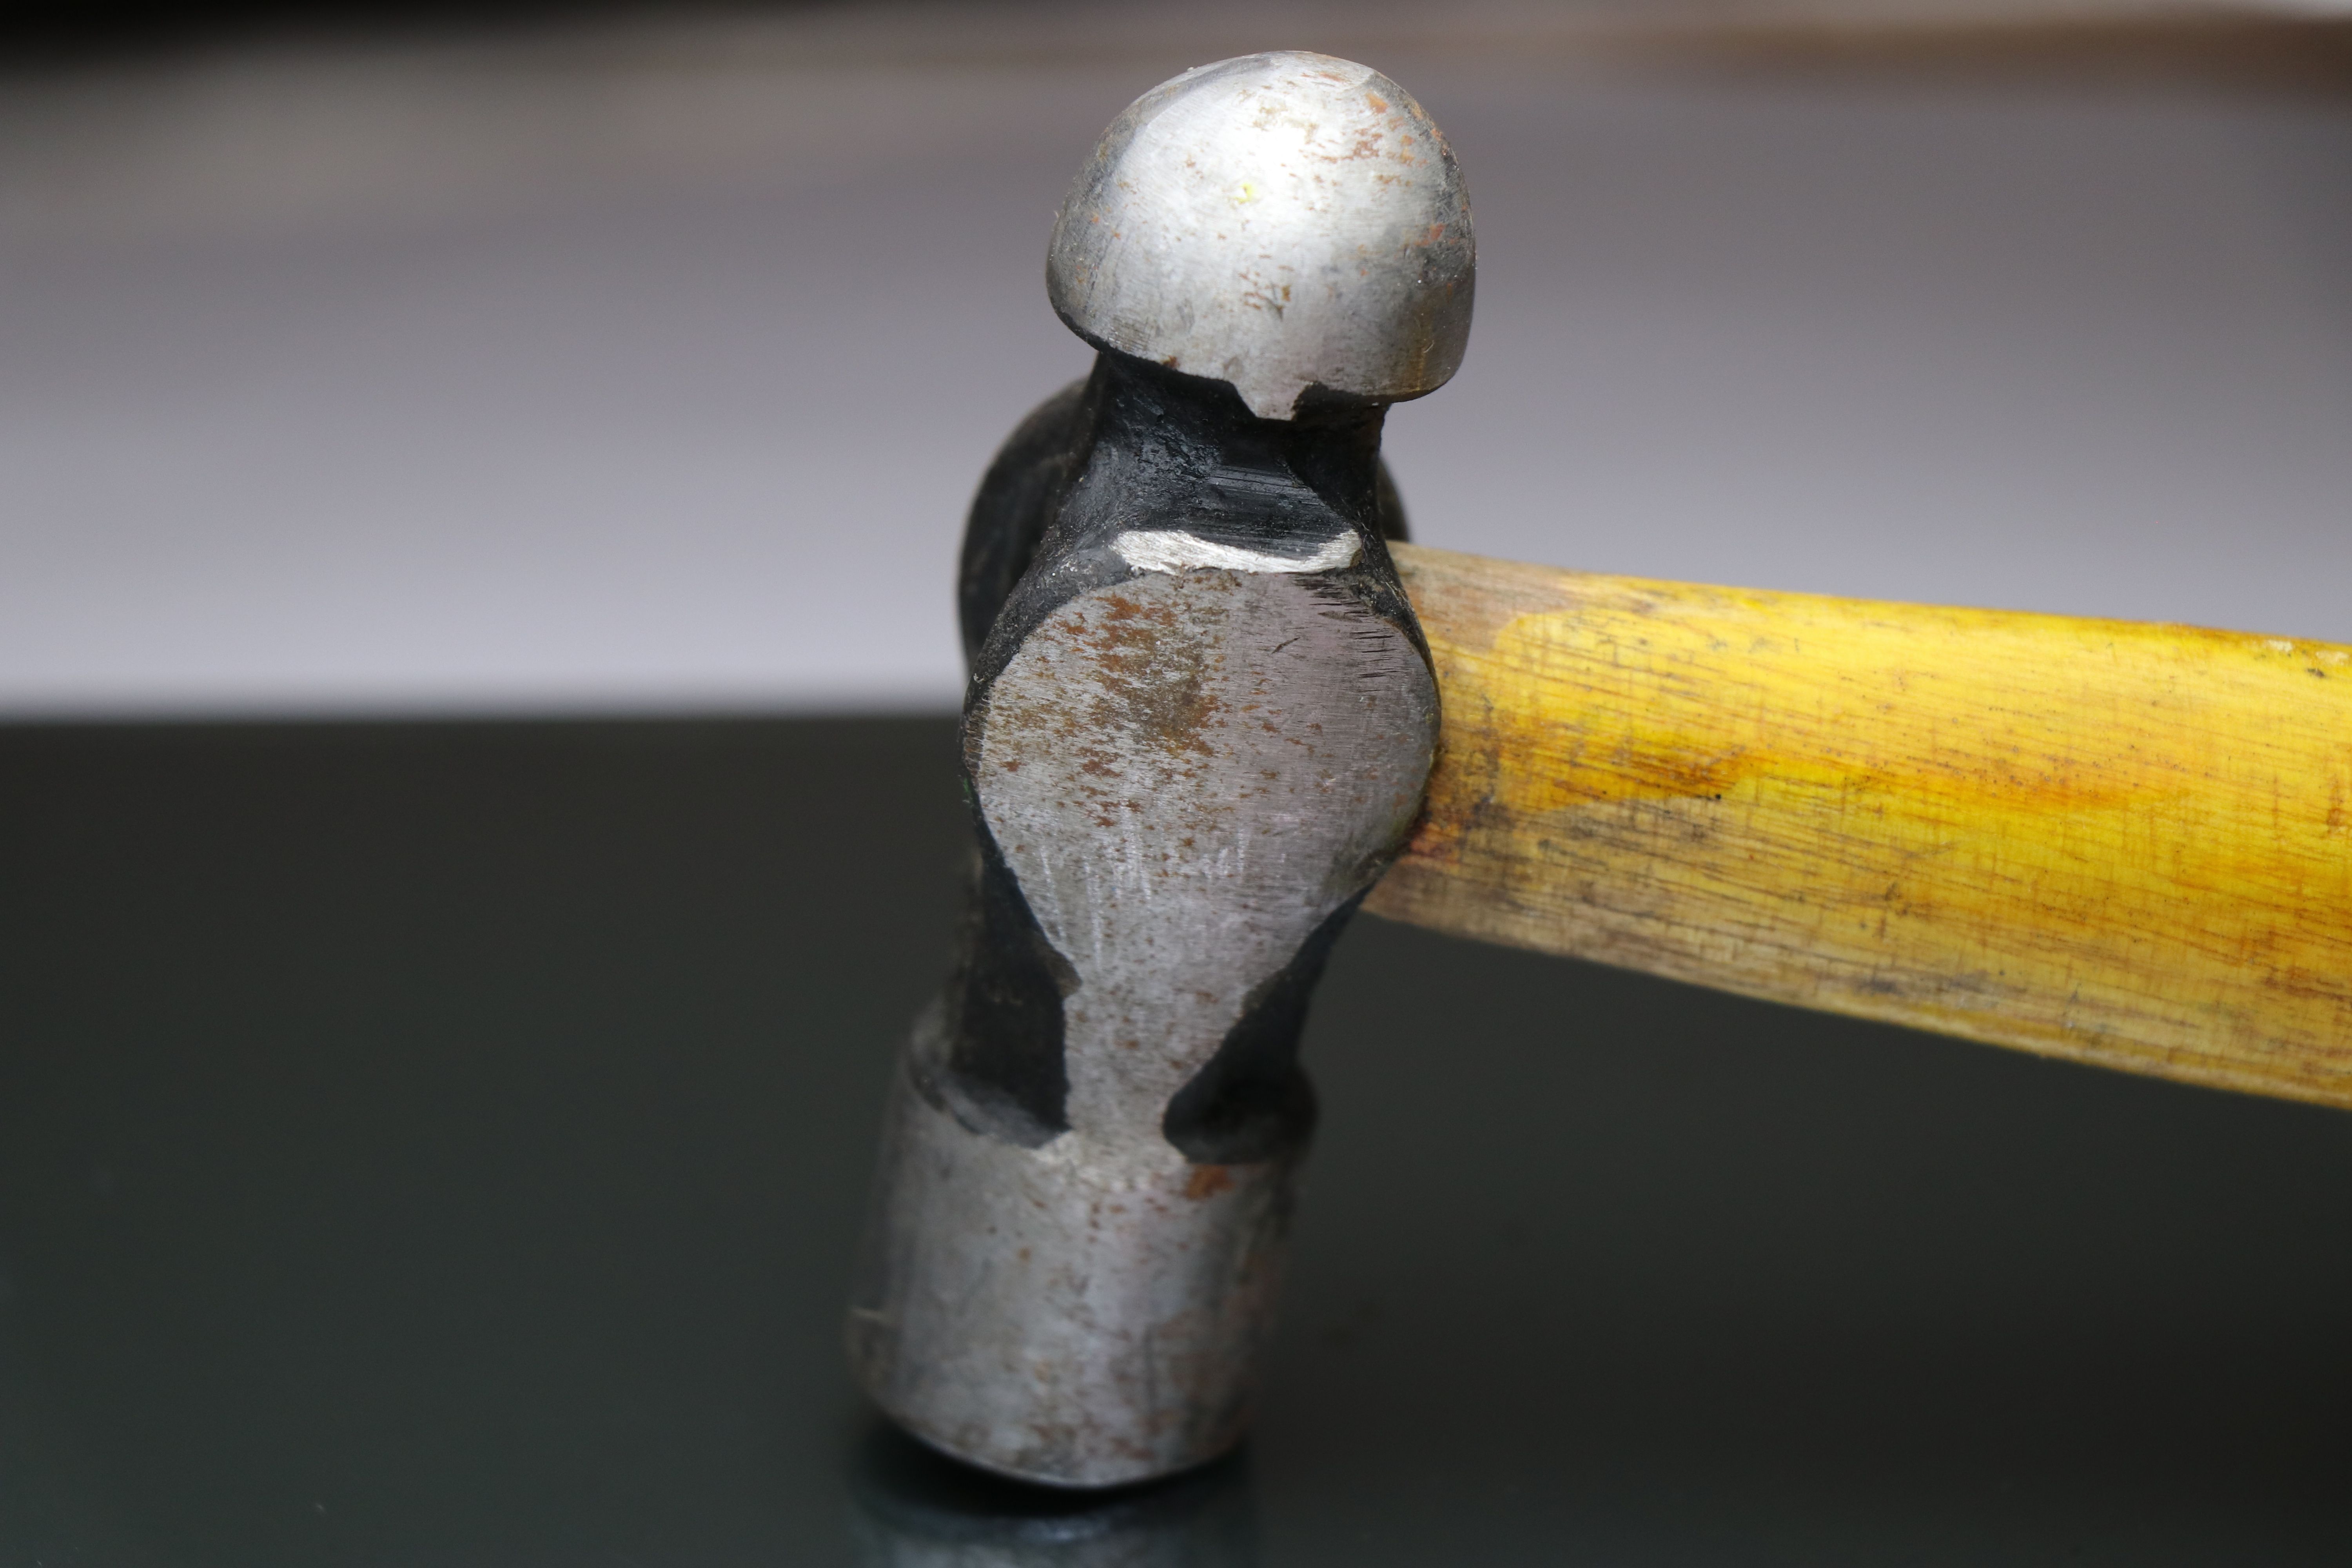 Die gewölbte Seite des Kugelhammers eignet sich ideal zum Verformen von leichten Metallen, wie beispielsweise Bleche. Daher wird er vorwiegend in Karosseriewerkstätten oder in Atelieren von Künstlern verwendet.